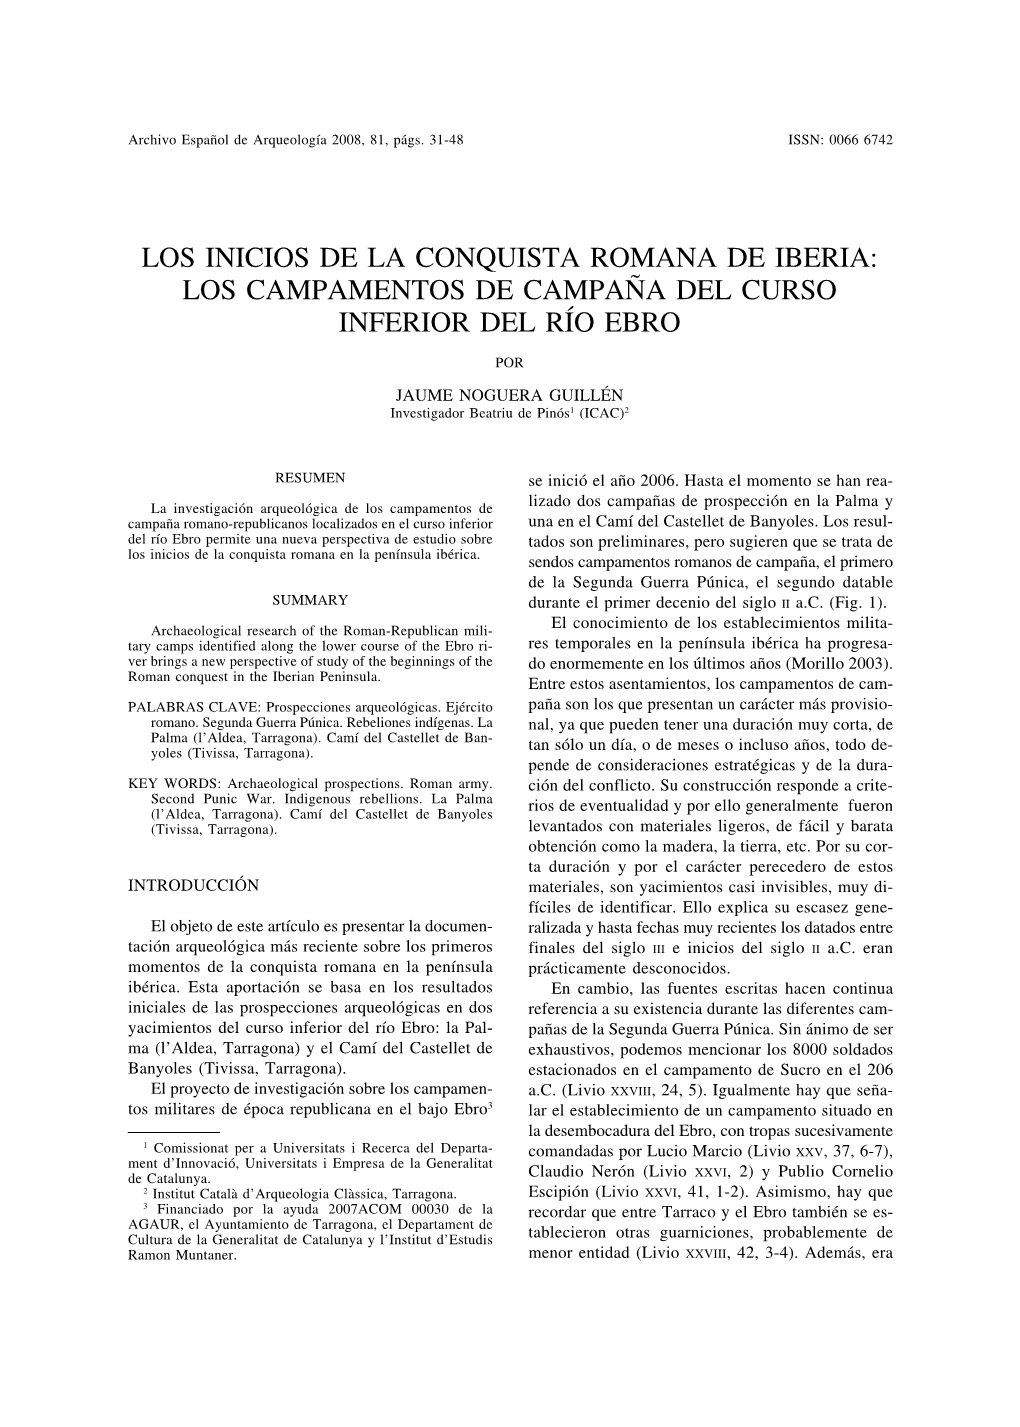 Los Inicios De La Conquista Romana De Iberia: Los Campamentos De Campaña Del Curso Inferior Del Río Ebro